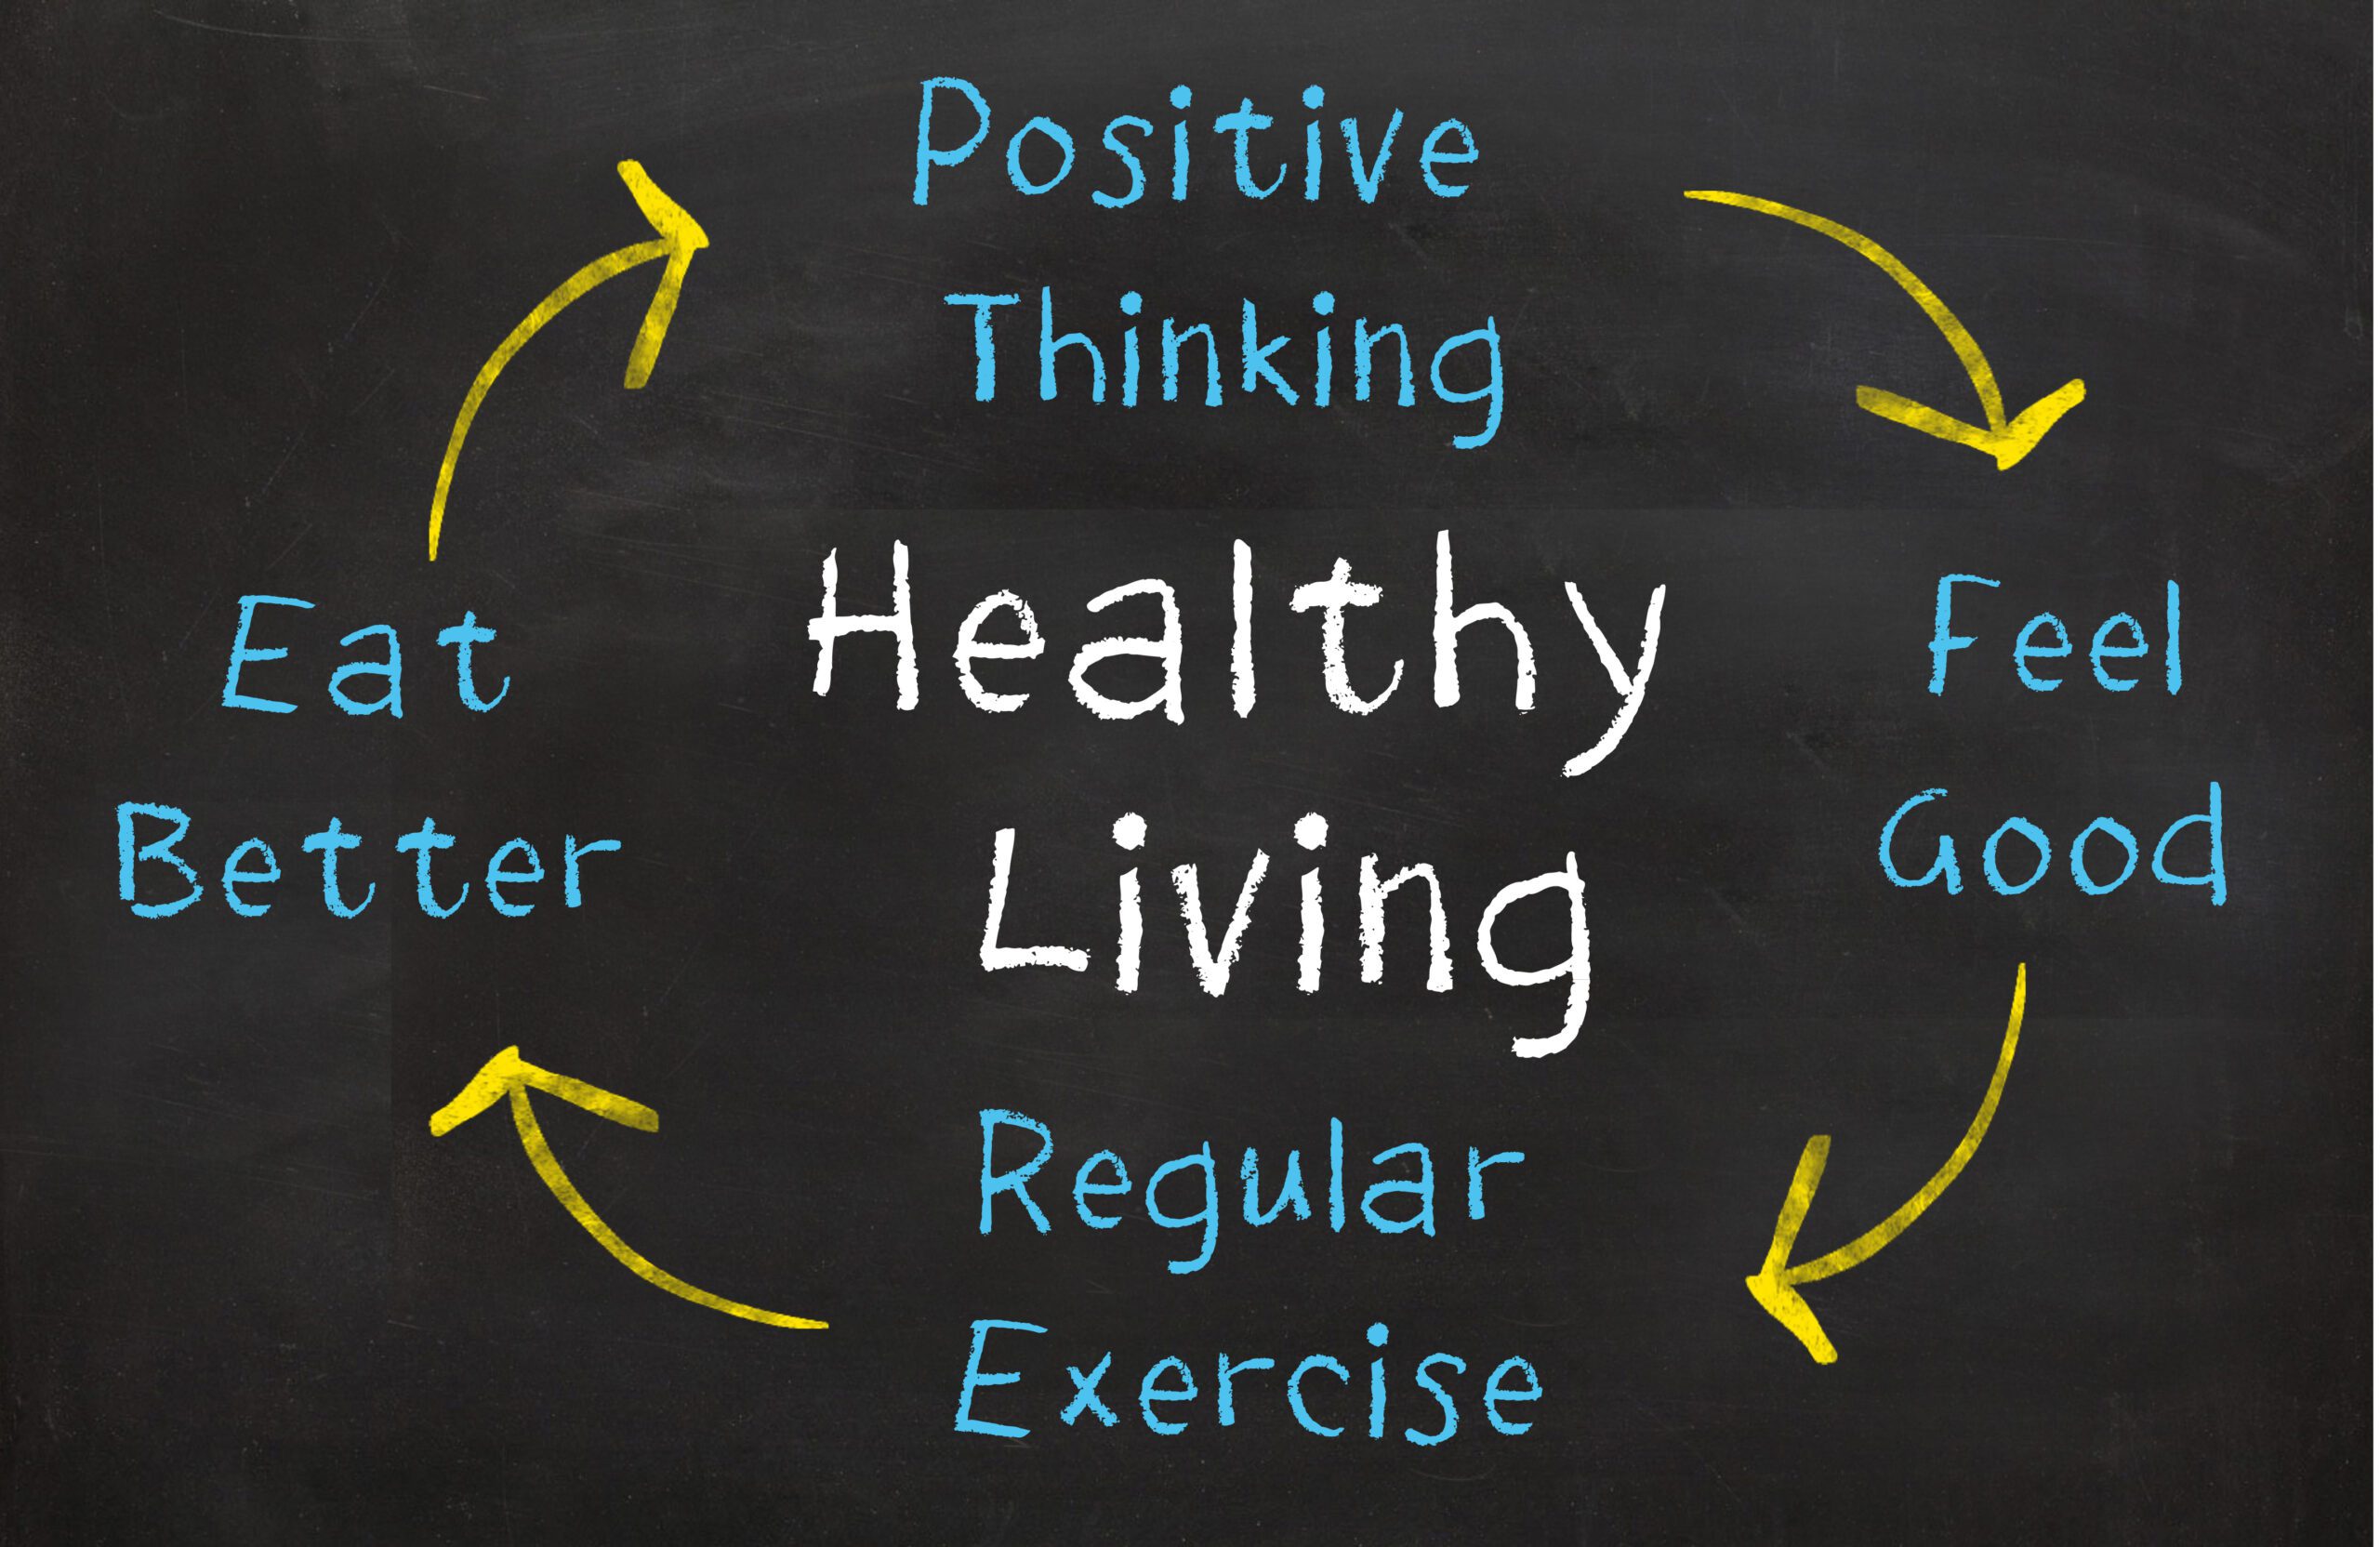 Healthy living diagram.